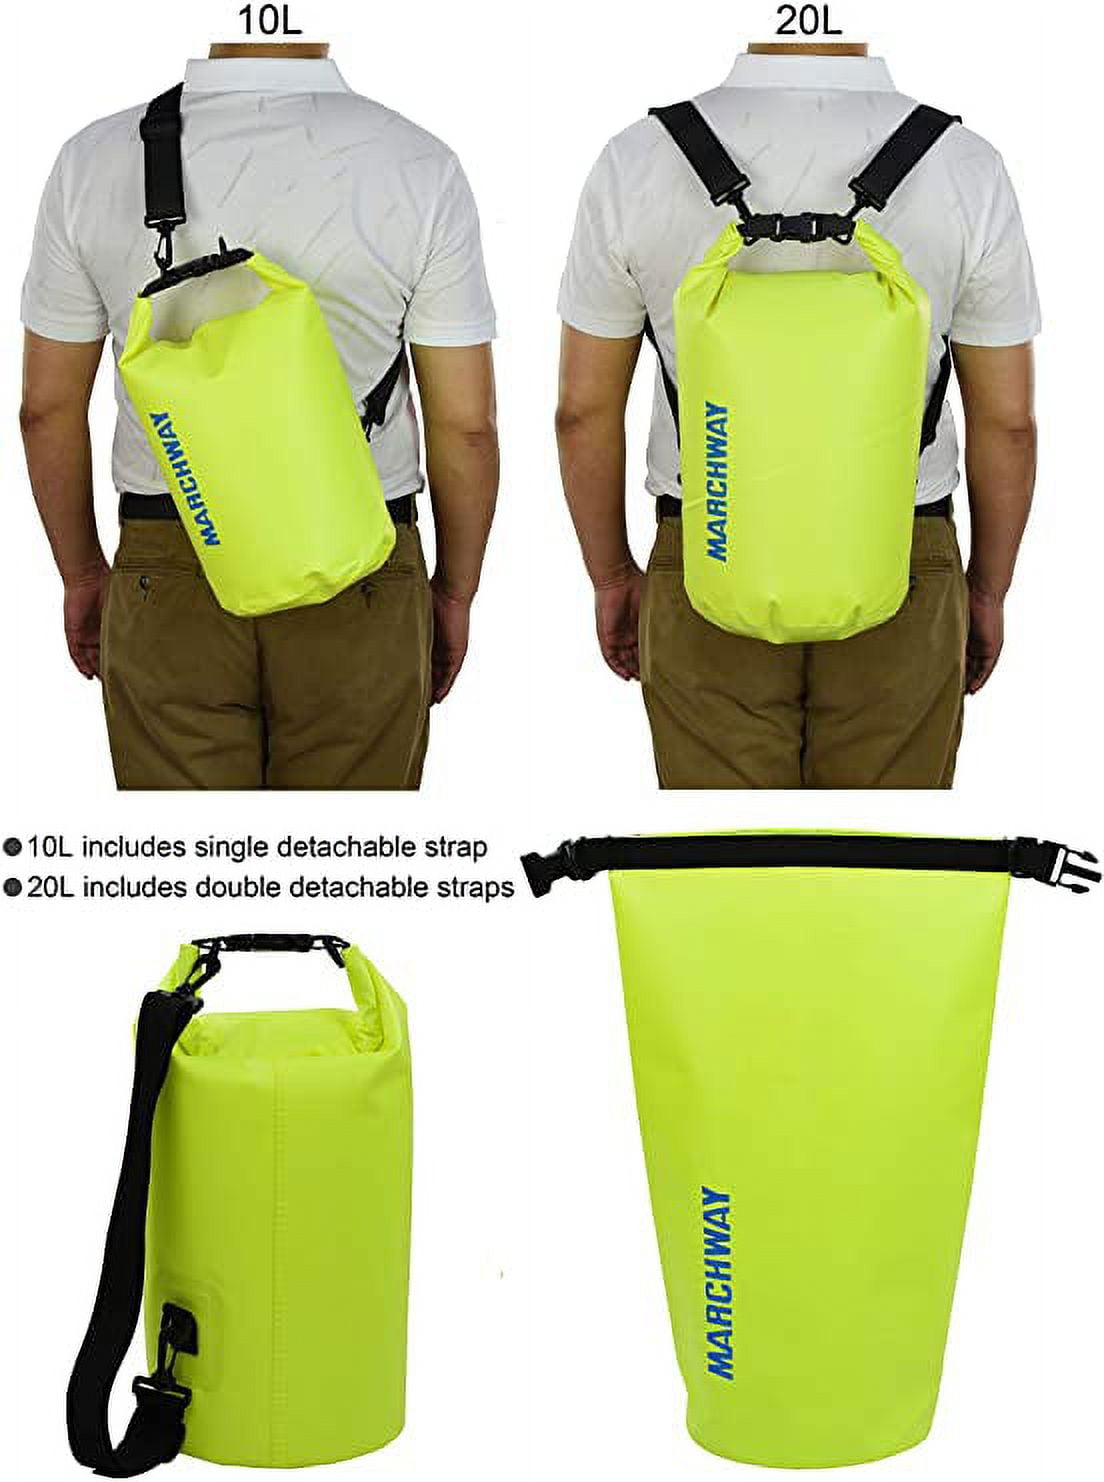 nbsp;Floating Waterproof Dry Bag 20L, Roll Top Sack Keeps Gear